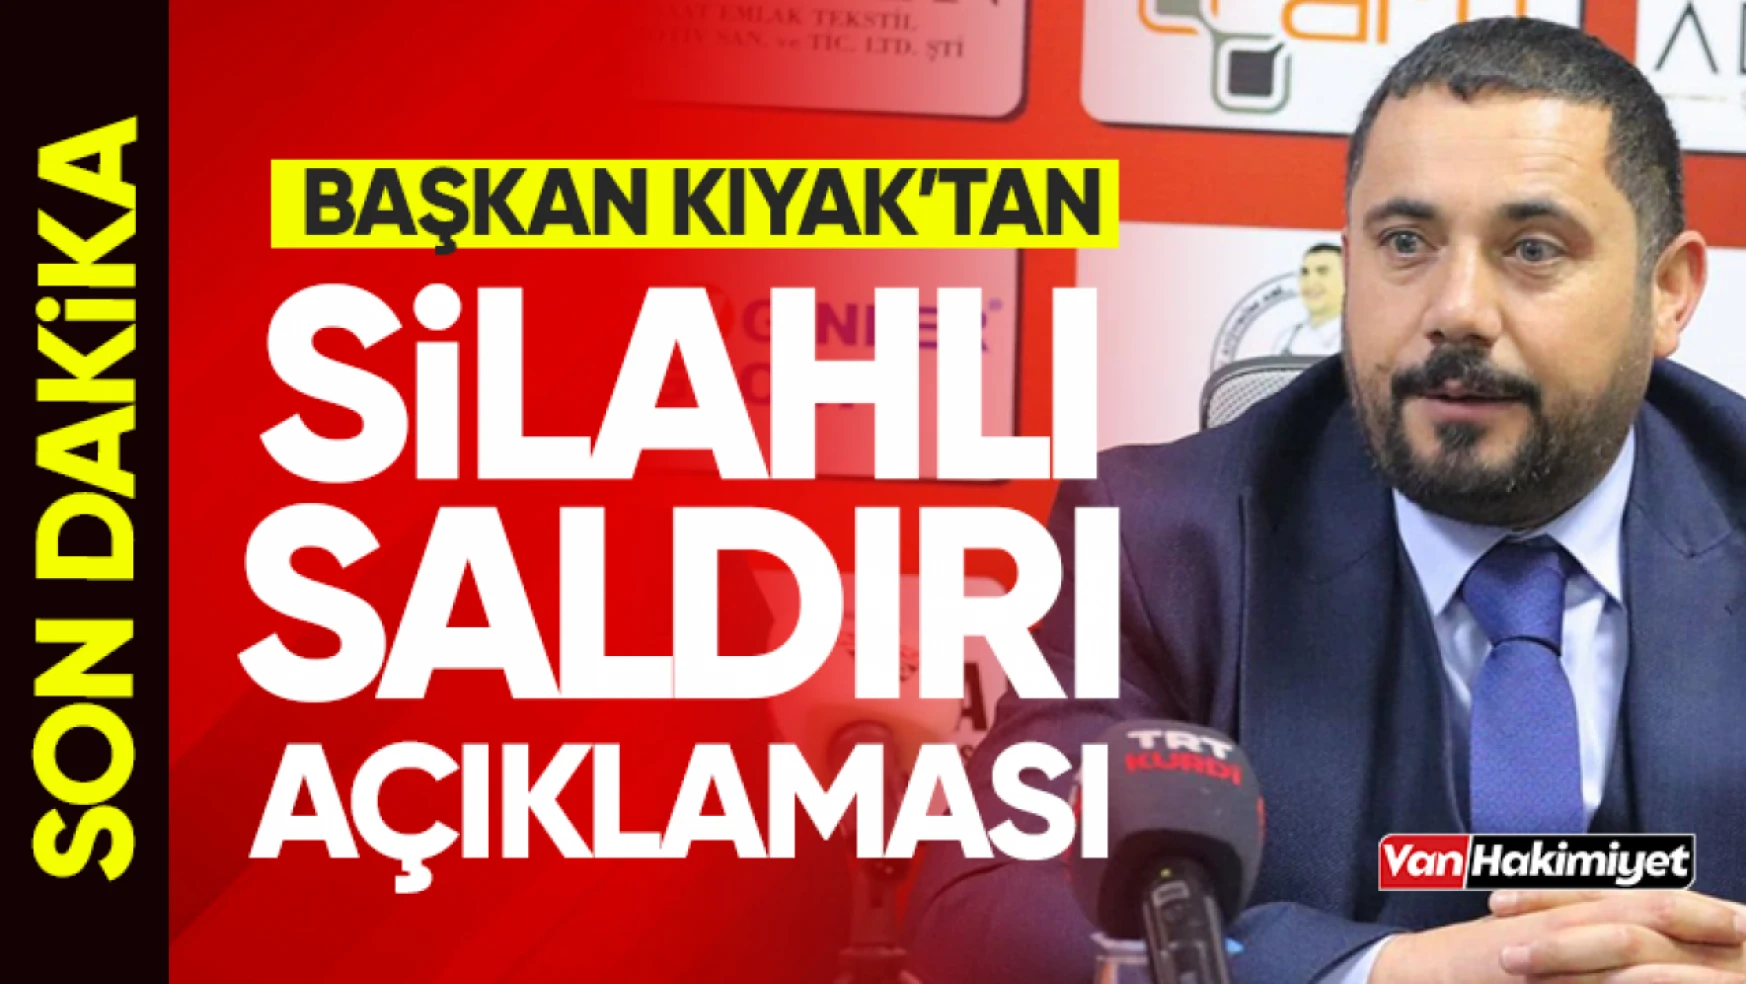 Vanspor Kulüp Başkanı Feyat Kıyak'tan silahlı saldırı açıklaması